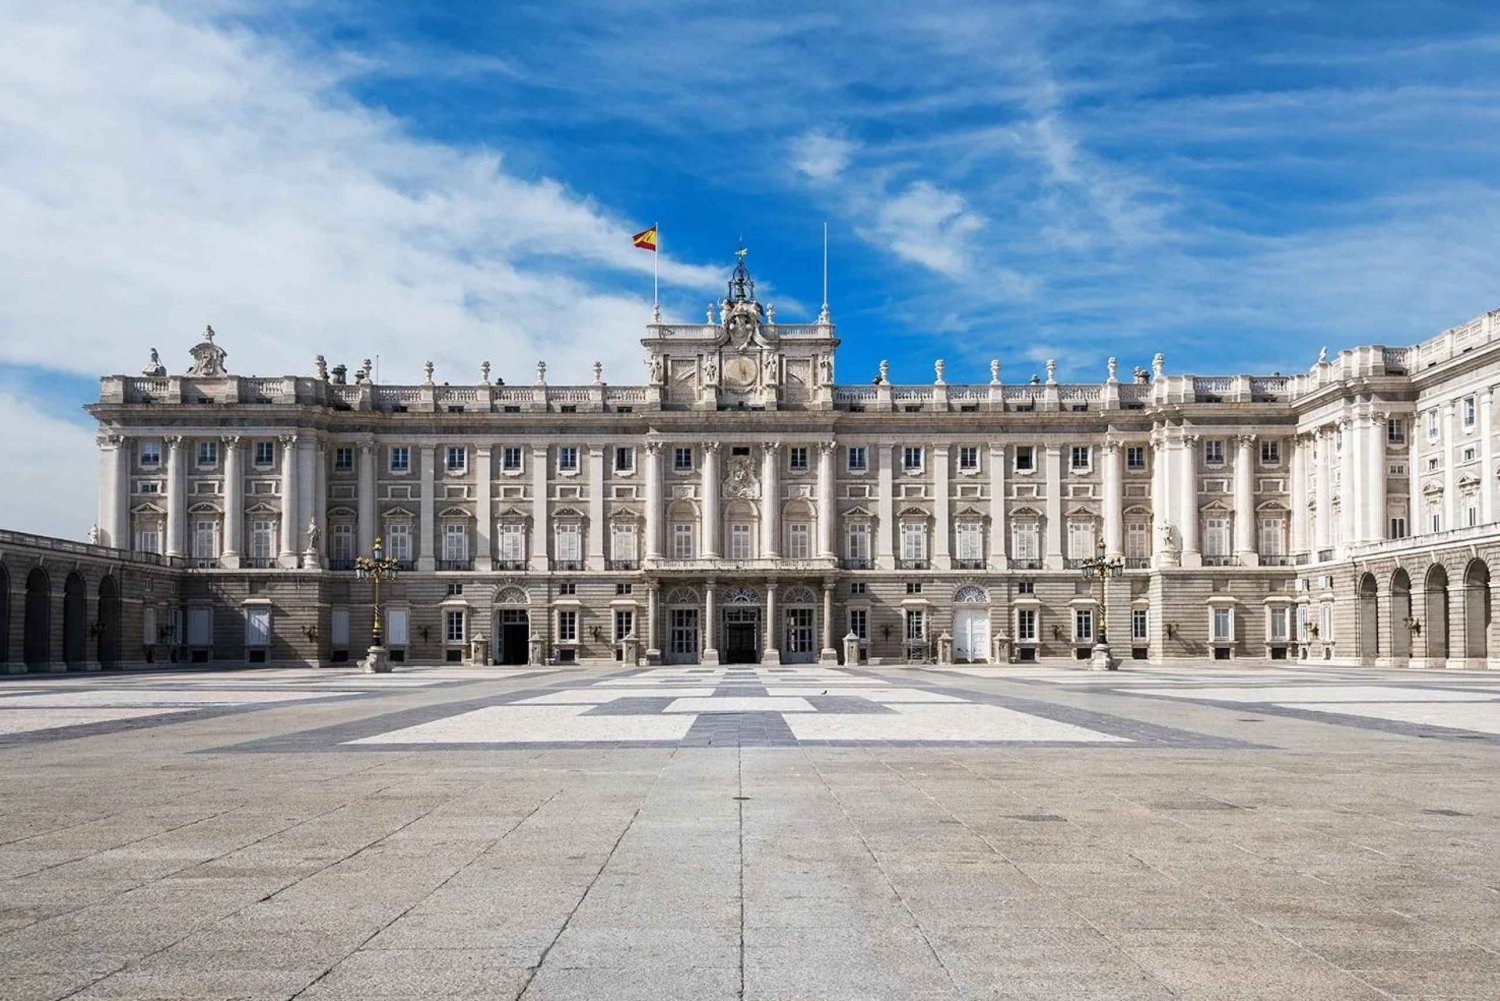 Gå inn i et kongelig palass: Madrid-palasset